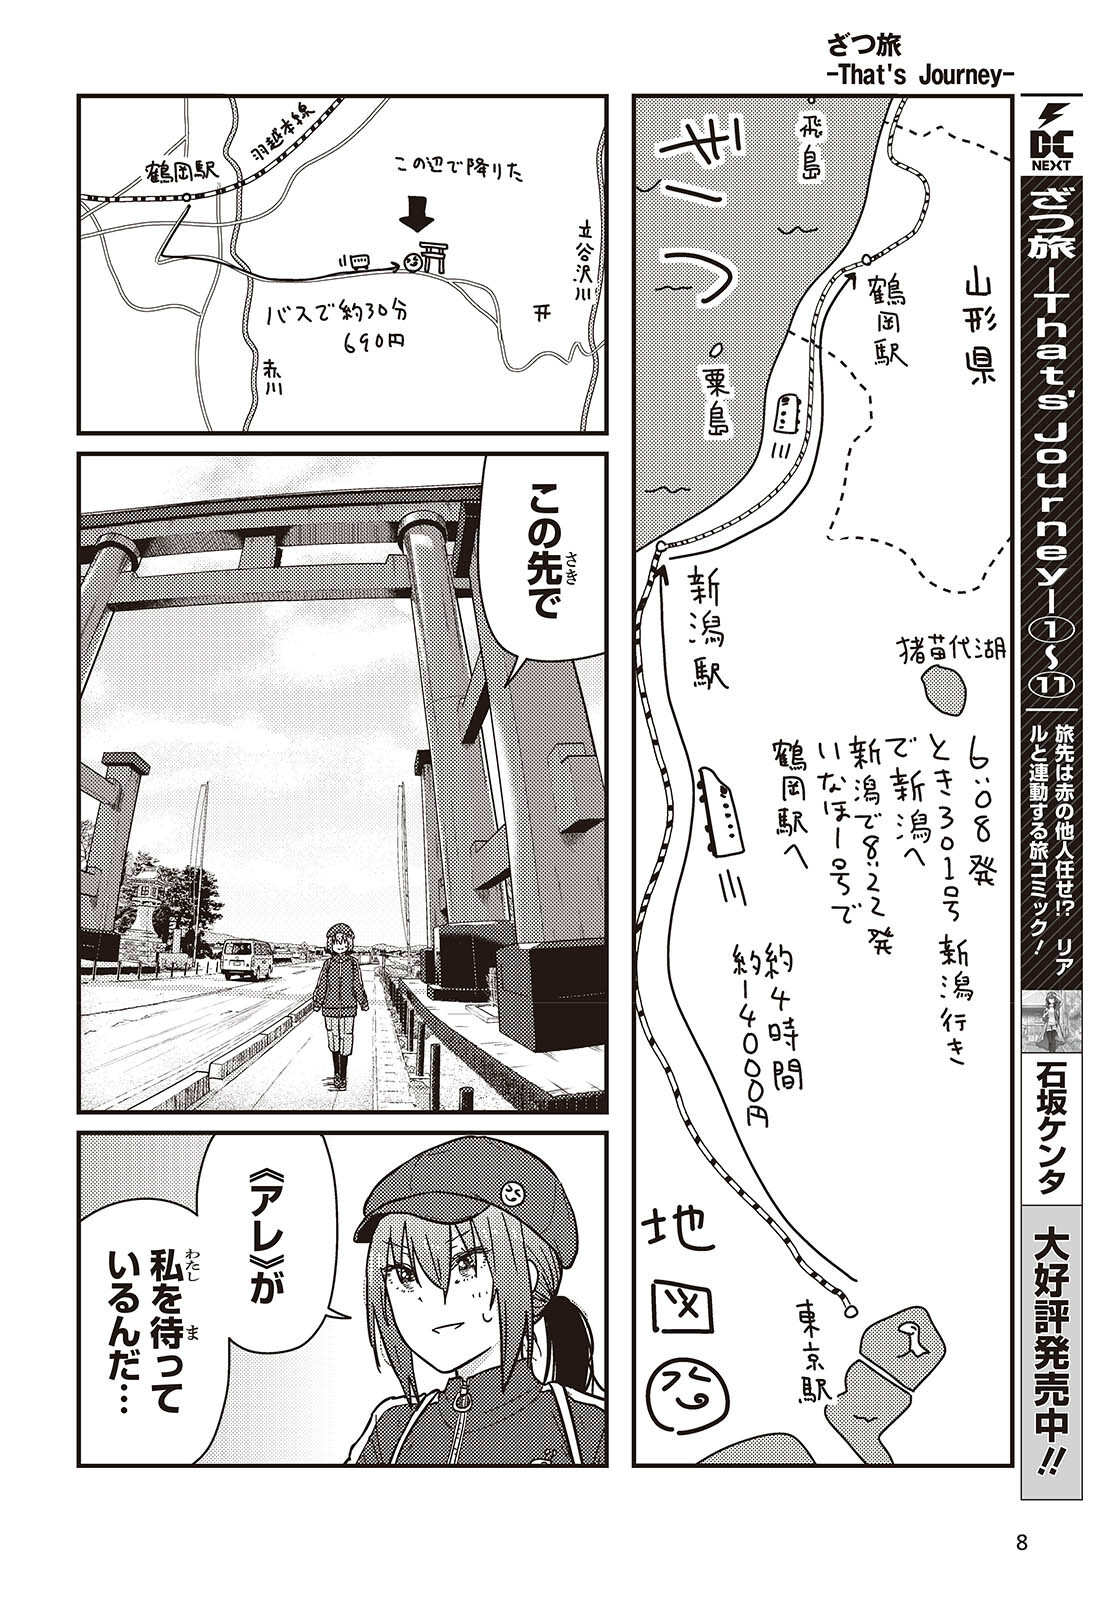 ざつ旅-That's Journey- 第38話 - Page 6